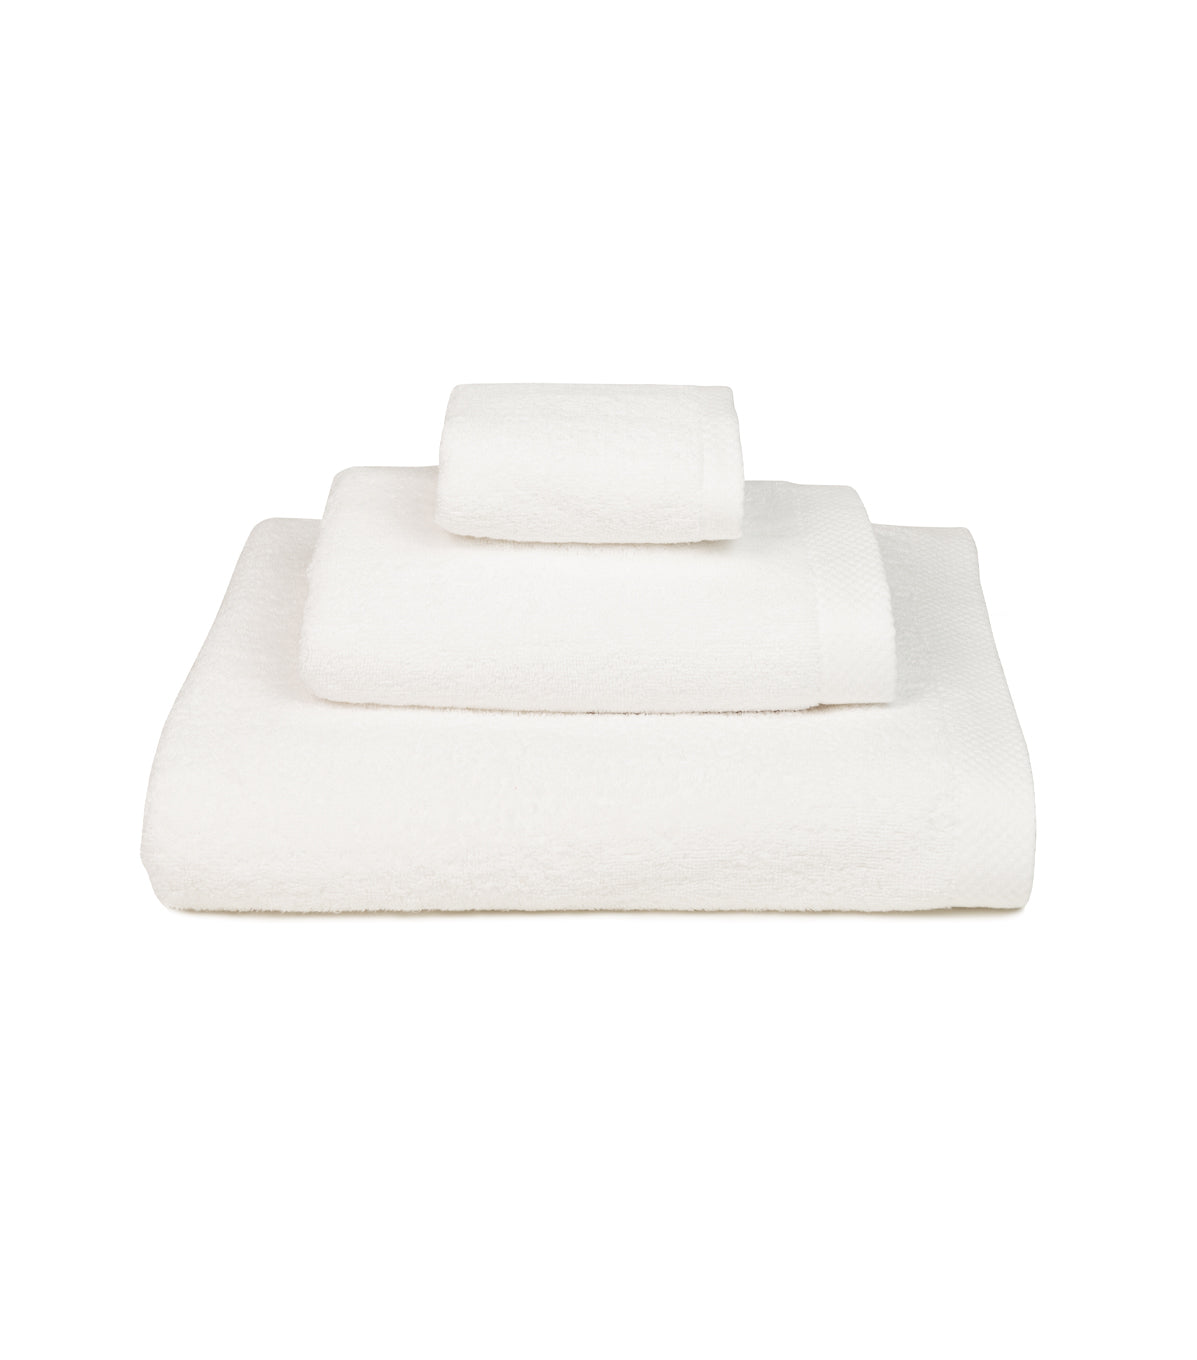 Luxus Bath Towel Set - White One Size Torres Novas